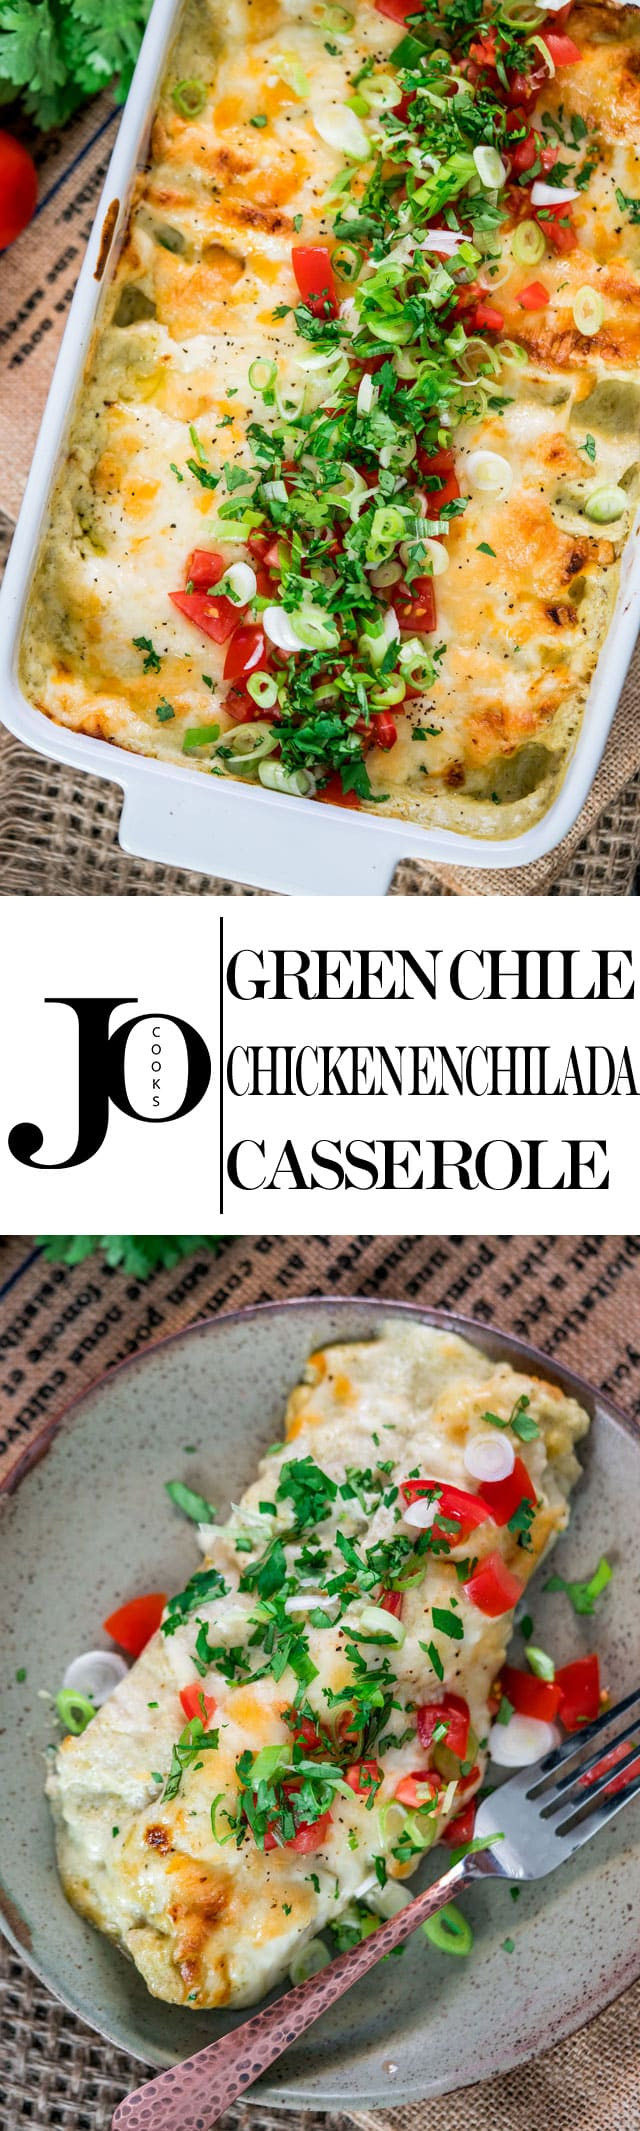 Green Chile Chicken Enchilada Casserole Recipe
 Quick and Easy Green Chile Chicken Enchilada Casserole